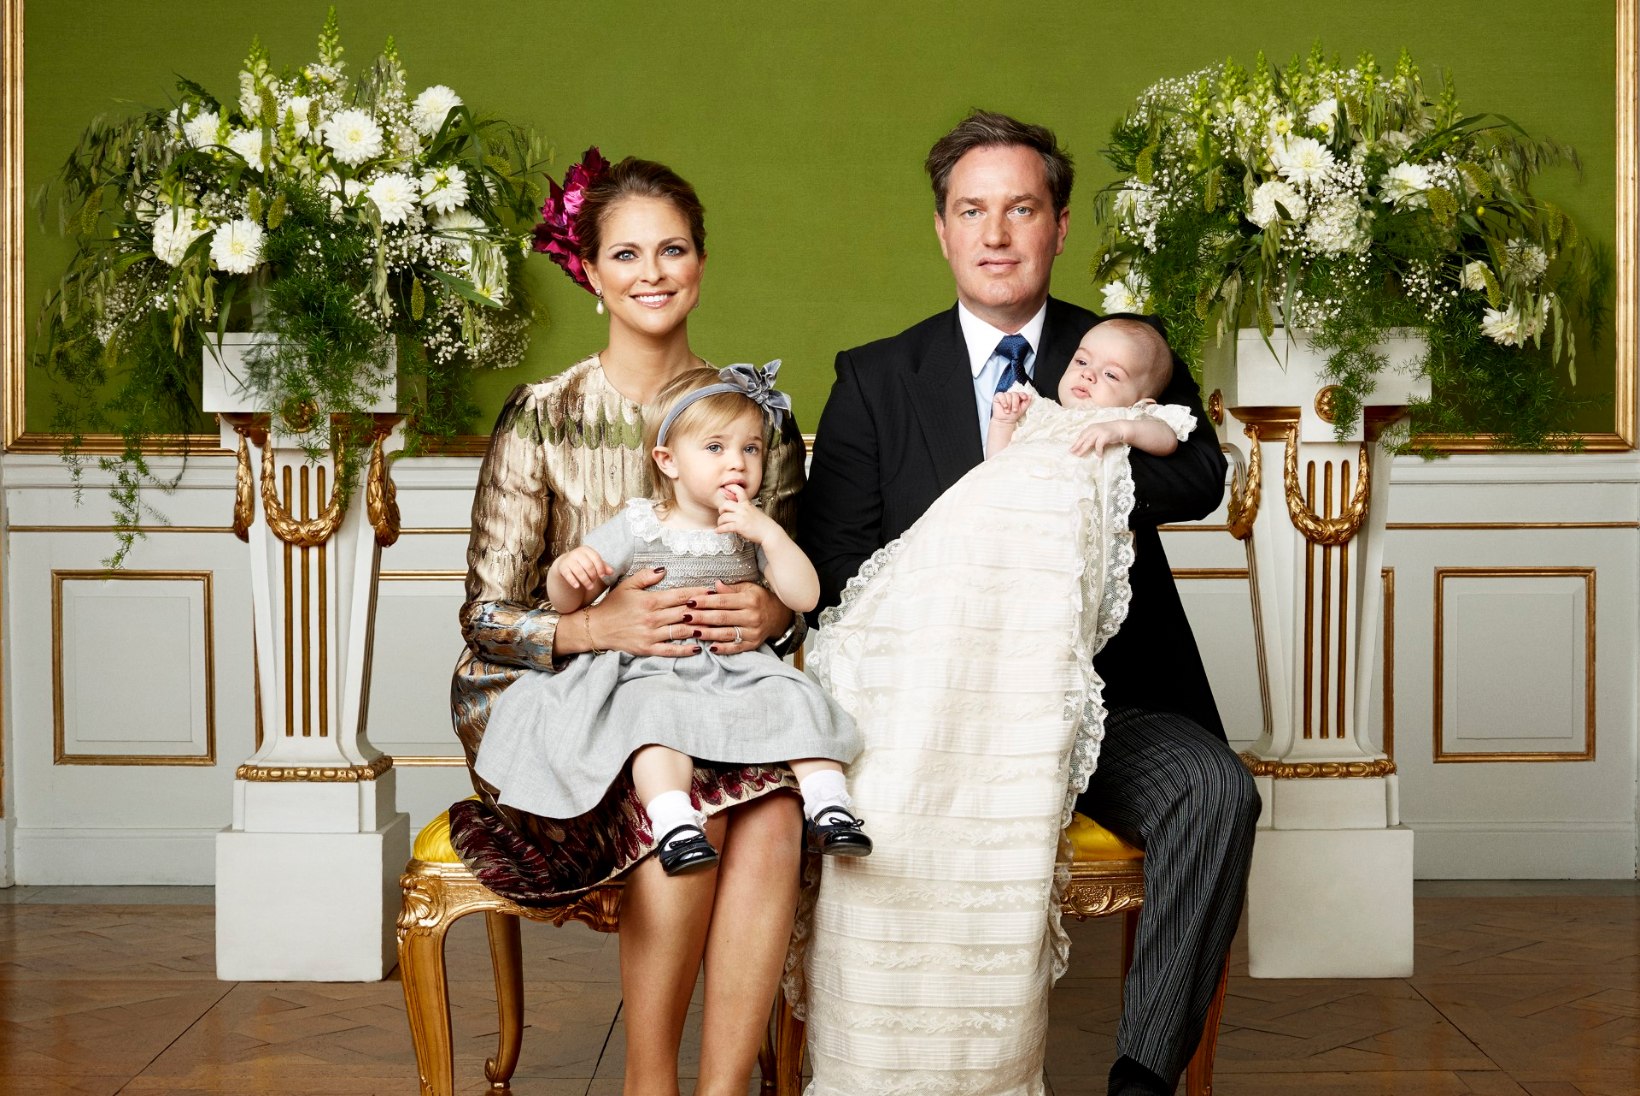 FOTOD | Rootsi kuninglik perekond avalikustas kaunid perepildid pisiprints Nicolase ristimiselt